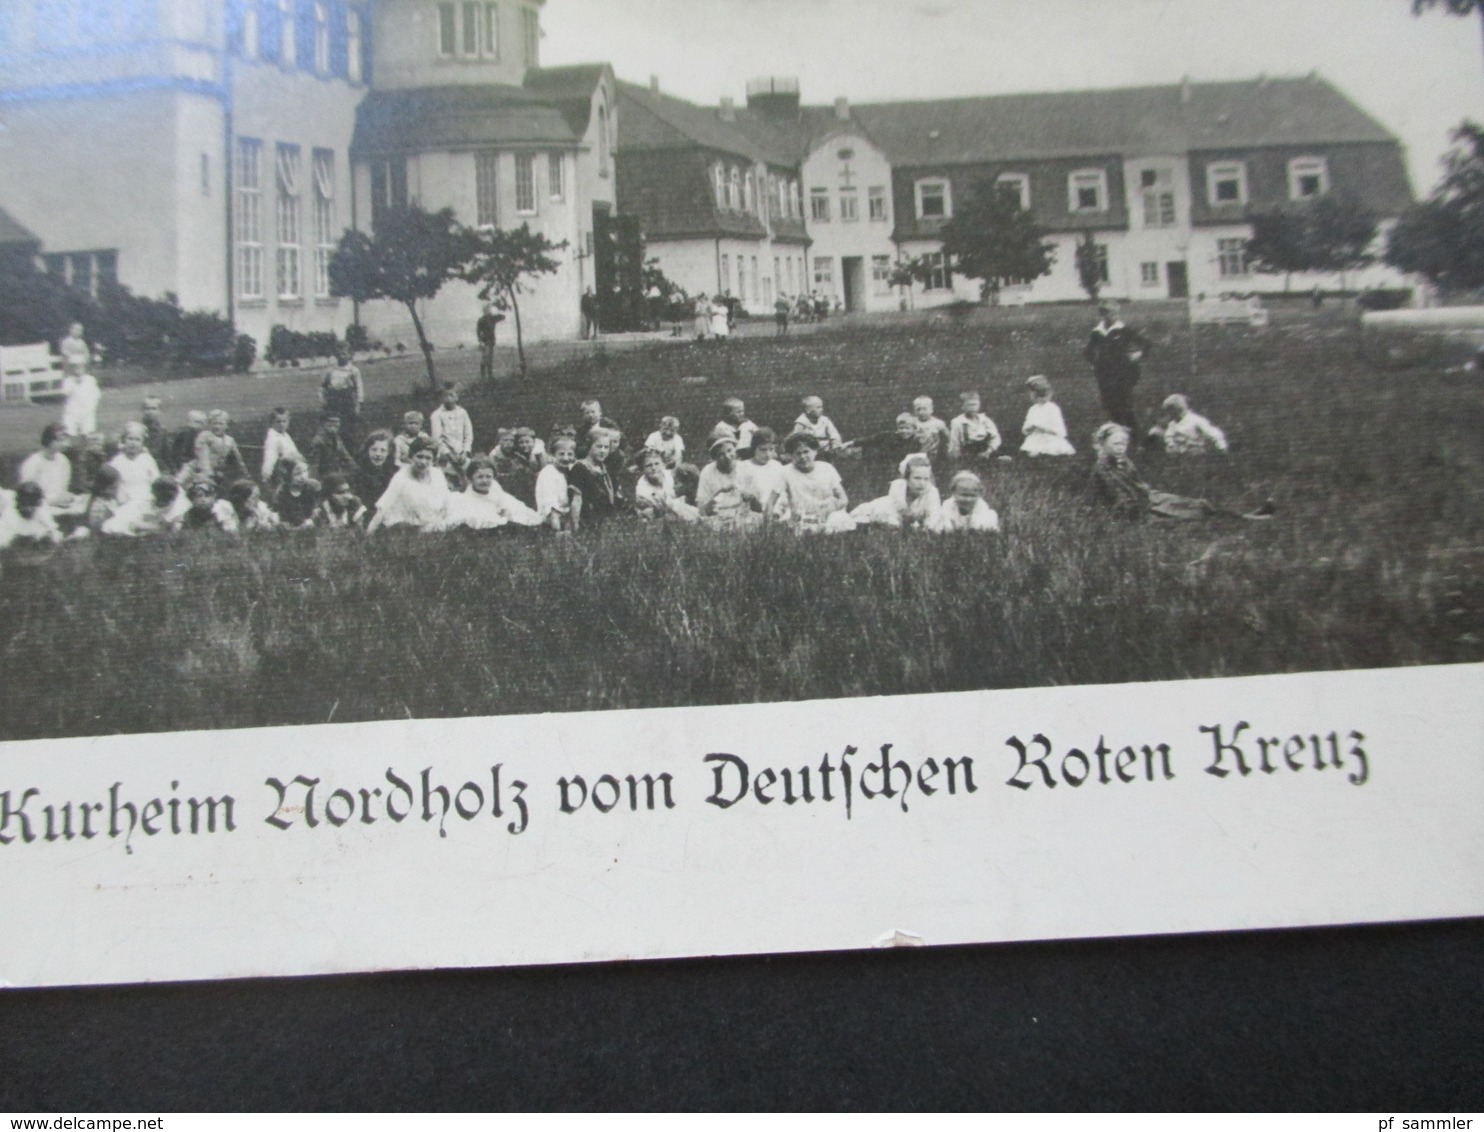 3.Reich Echtfoto AK Kindererholungs Und Kurheim Nordholz Vom Deutschen Roten Kreuz / DRK Nordholz Bei Cuxhaven - Croce Rossa